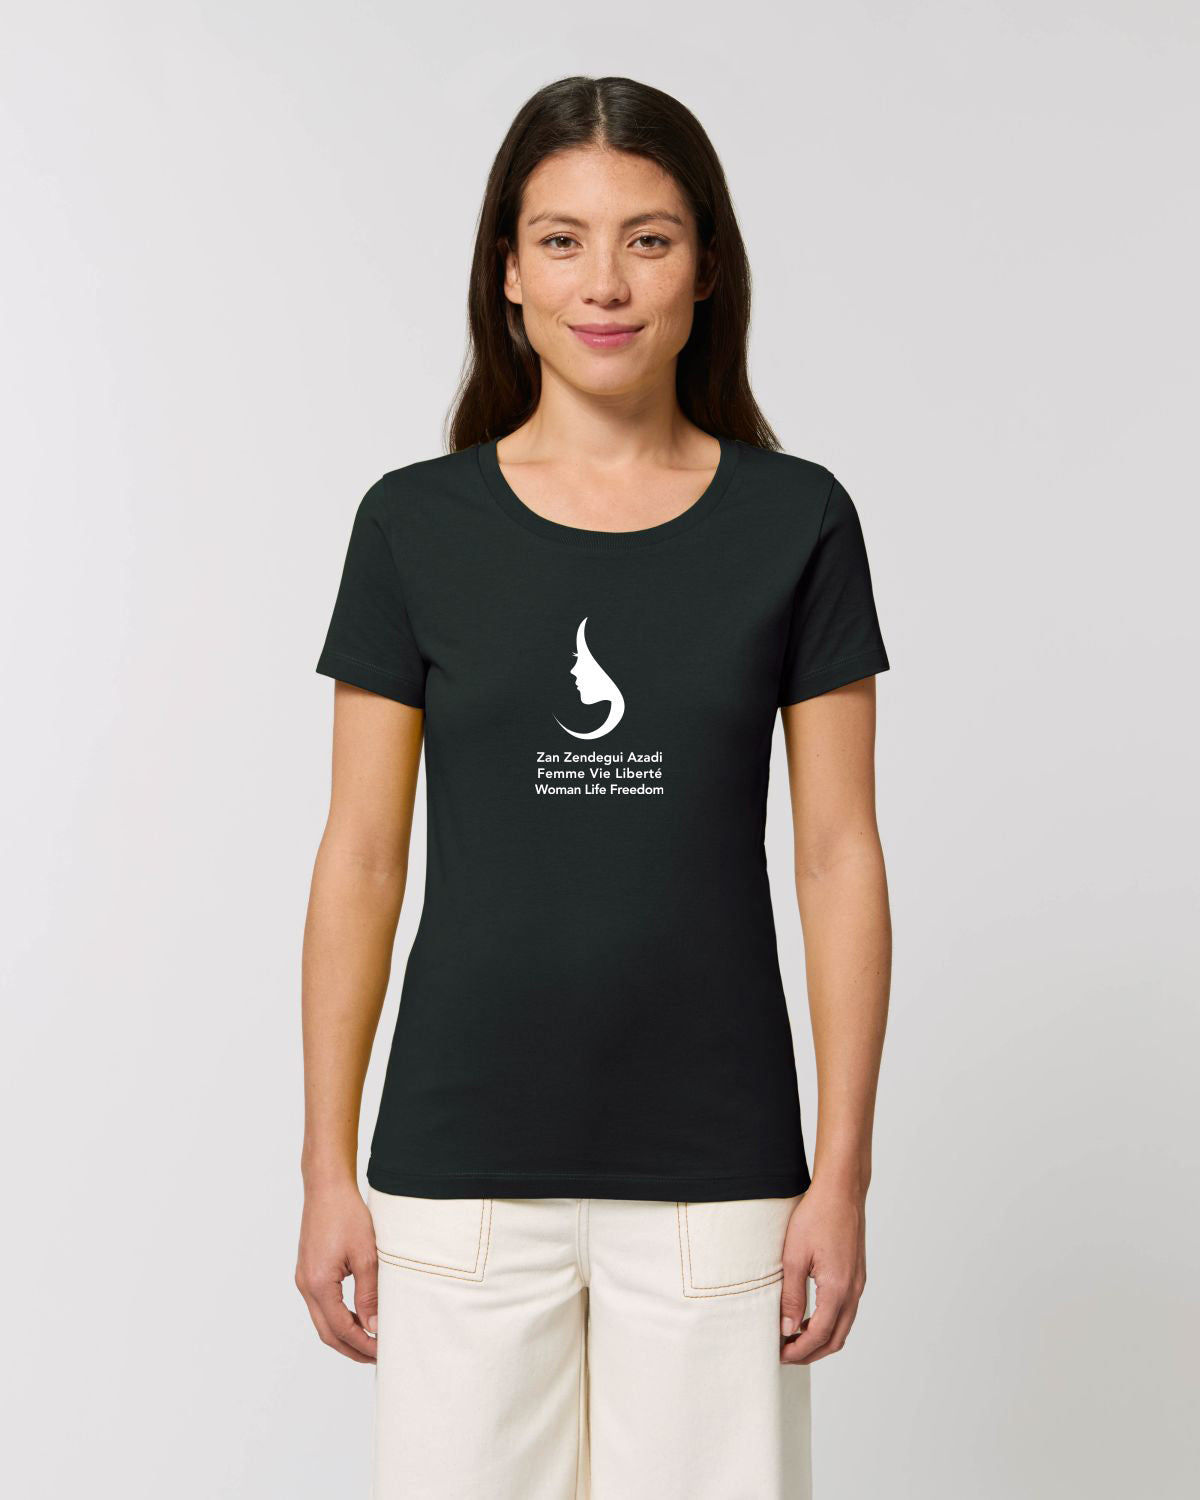 T -Shirt "Frau Life Liberty" - Frau